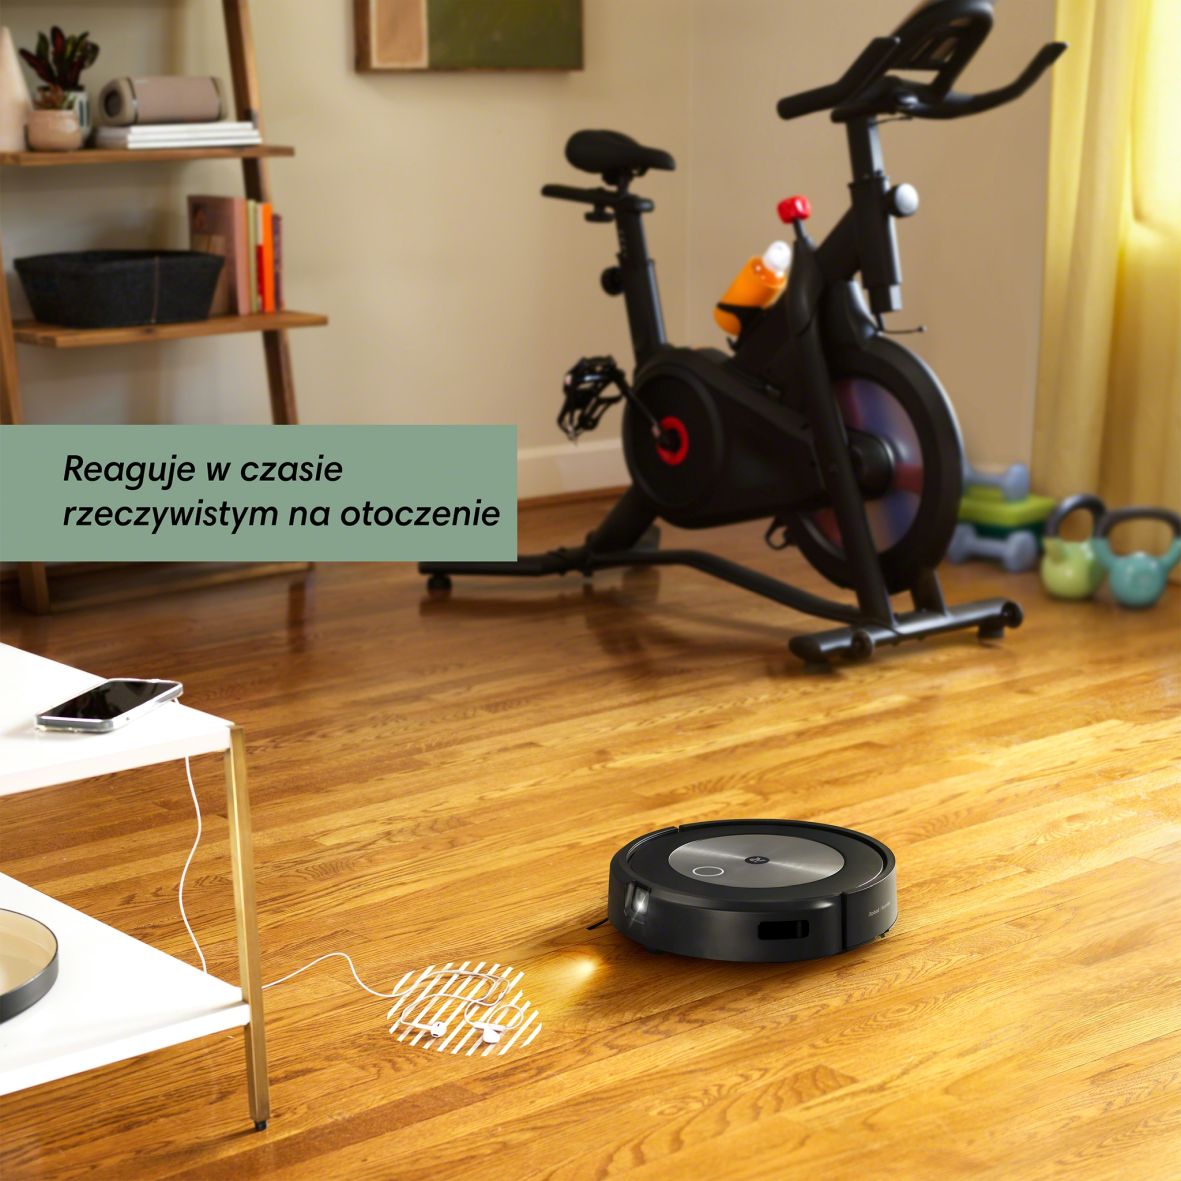 iRobot Roomba j7 i j7+ - nowe odkurzacze, które w miarę użytkowania stają się coraz mądrzejsze